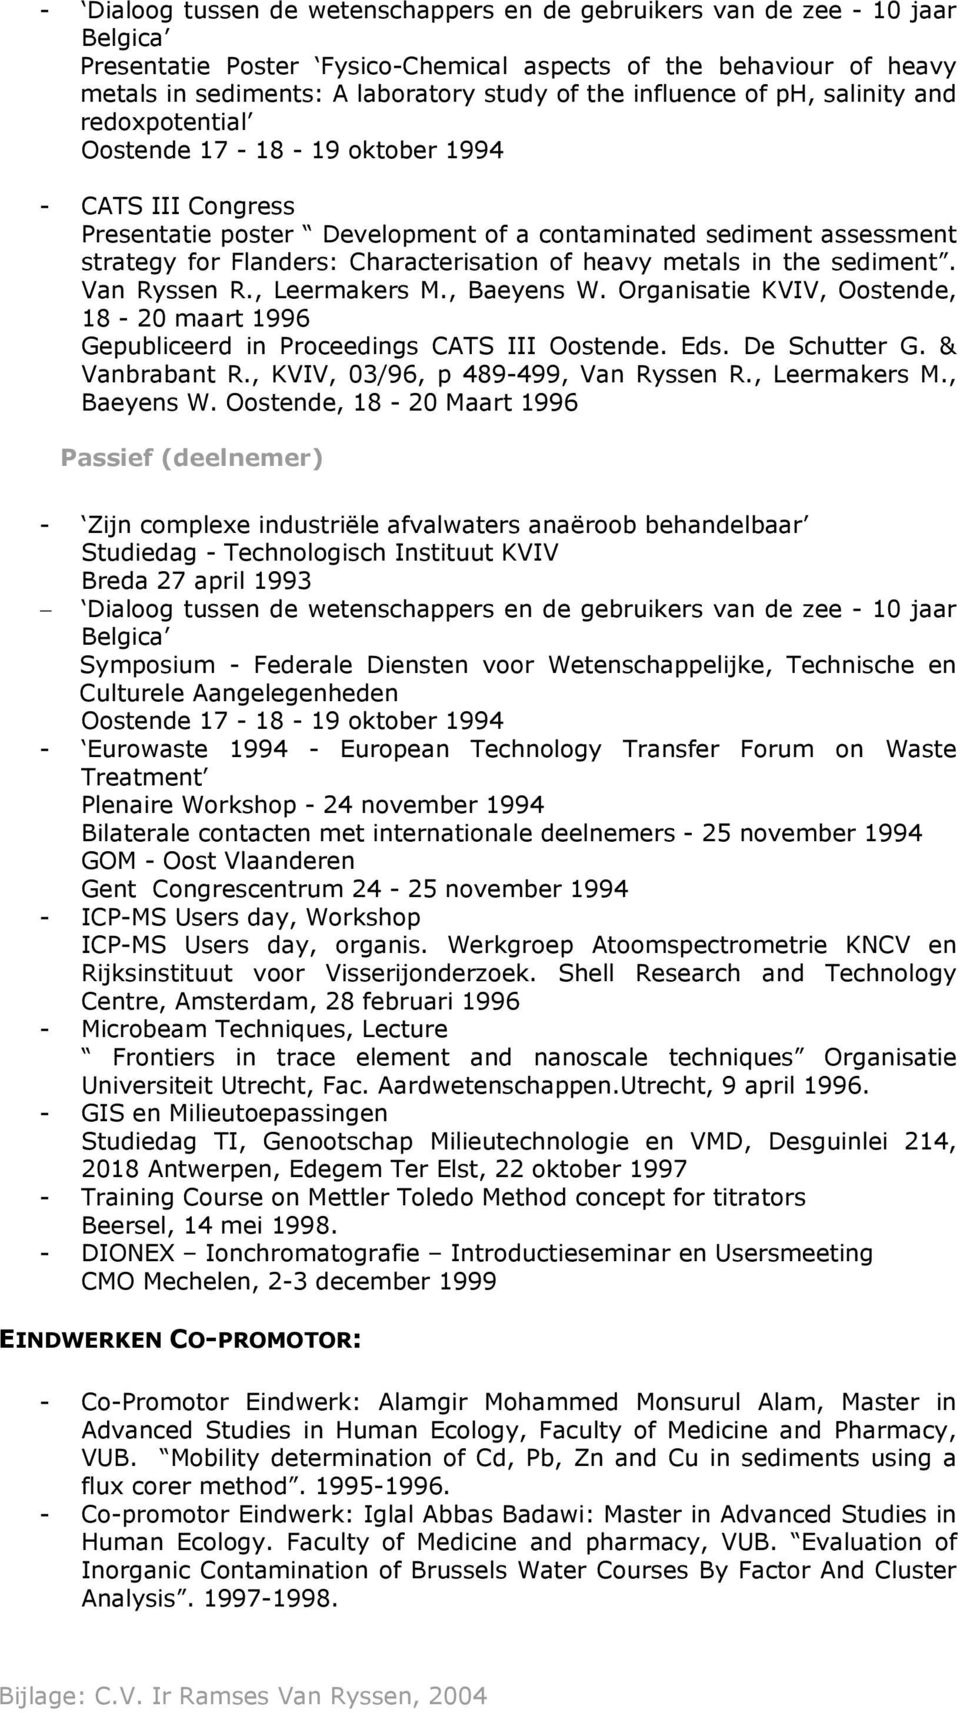 Characterisation of heavy metals in the sediment. Van Ryssen R., Leermakers M., Baeyens W. Organisatie KVIV, Oostende, 18-20 maart 1996 Gepubliceerd in Proceedings CATS III Oostende. Eds.